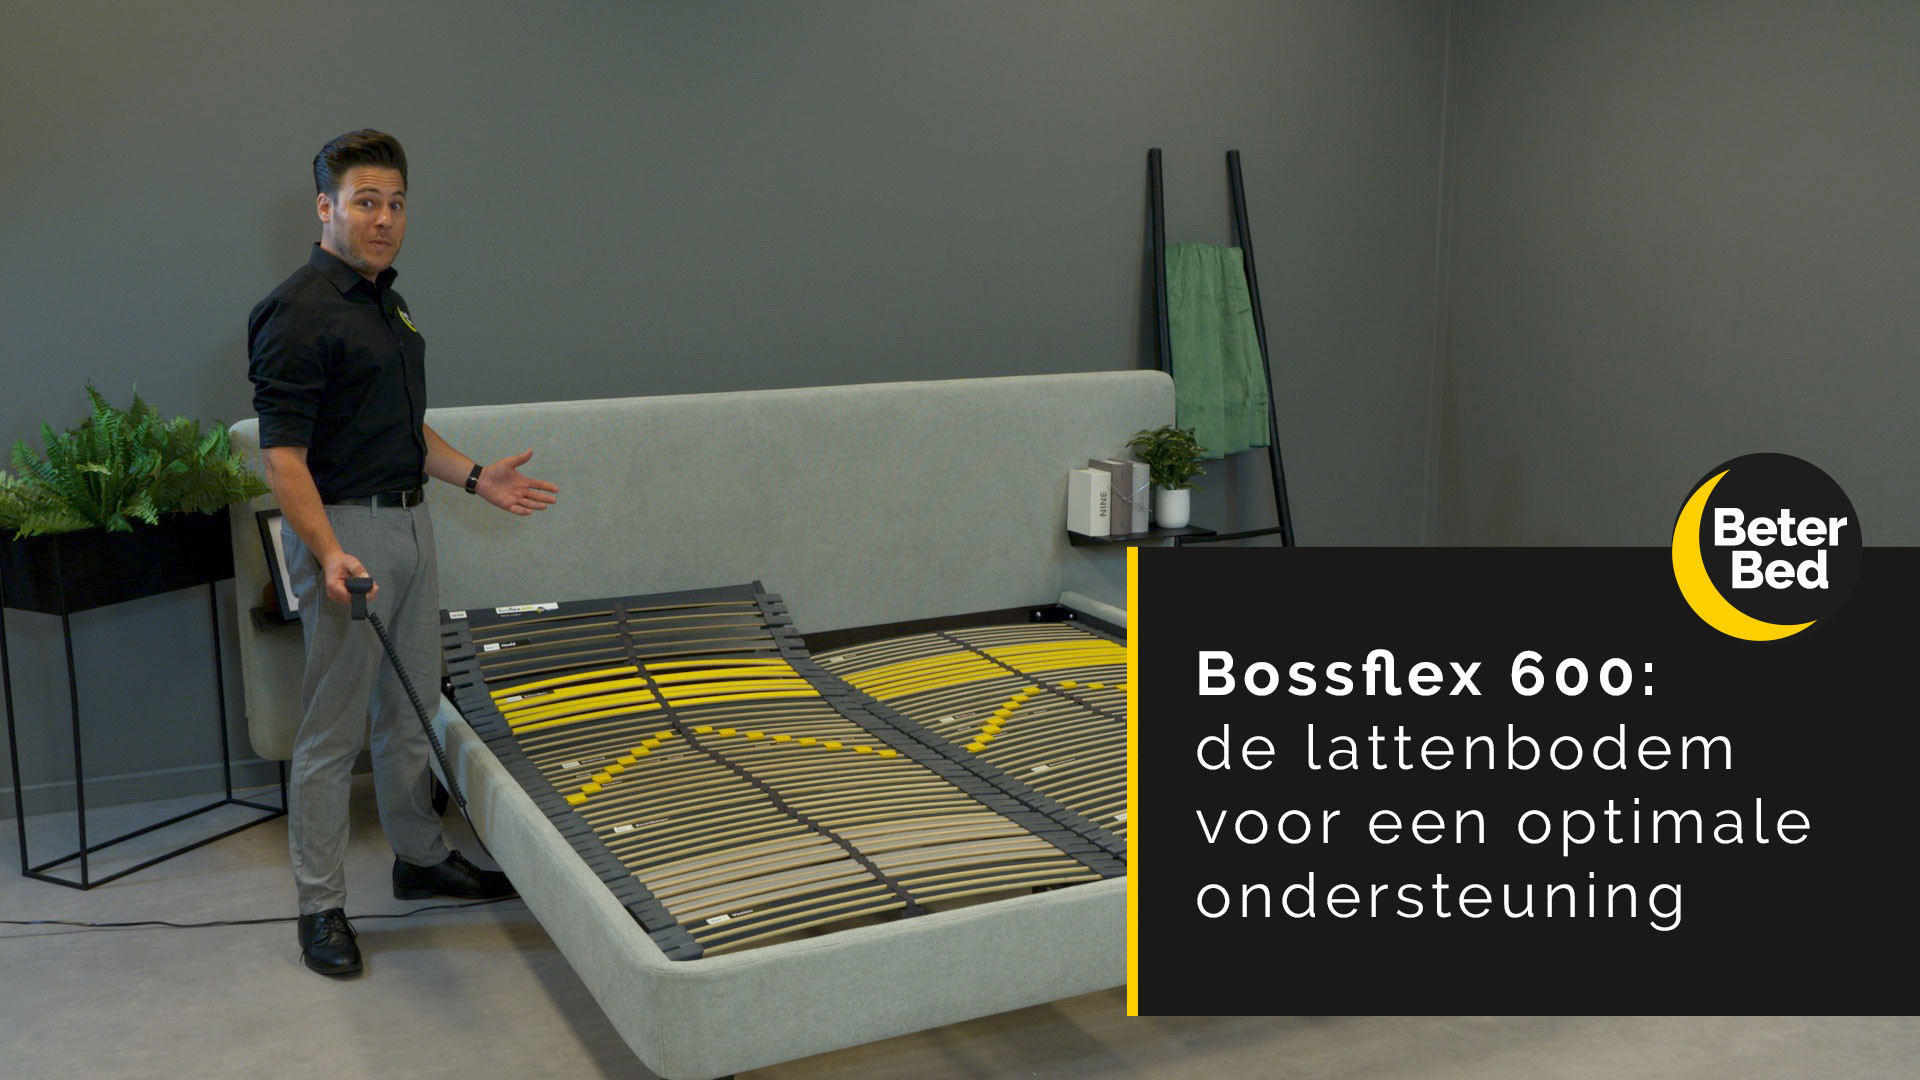 Bossflex 600 lattenbodem: voor optimale ondersteuning | Beter Bed